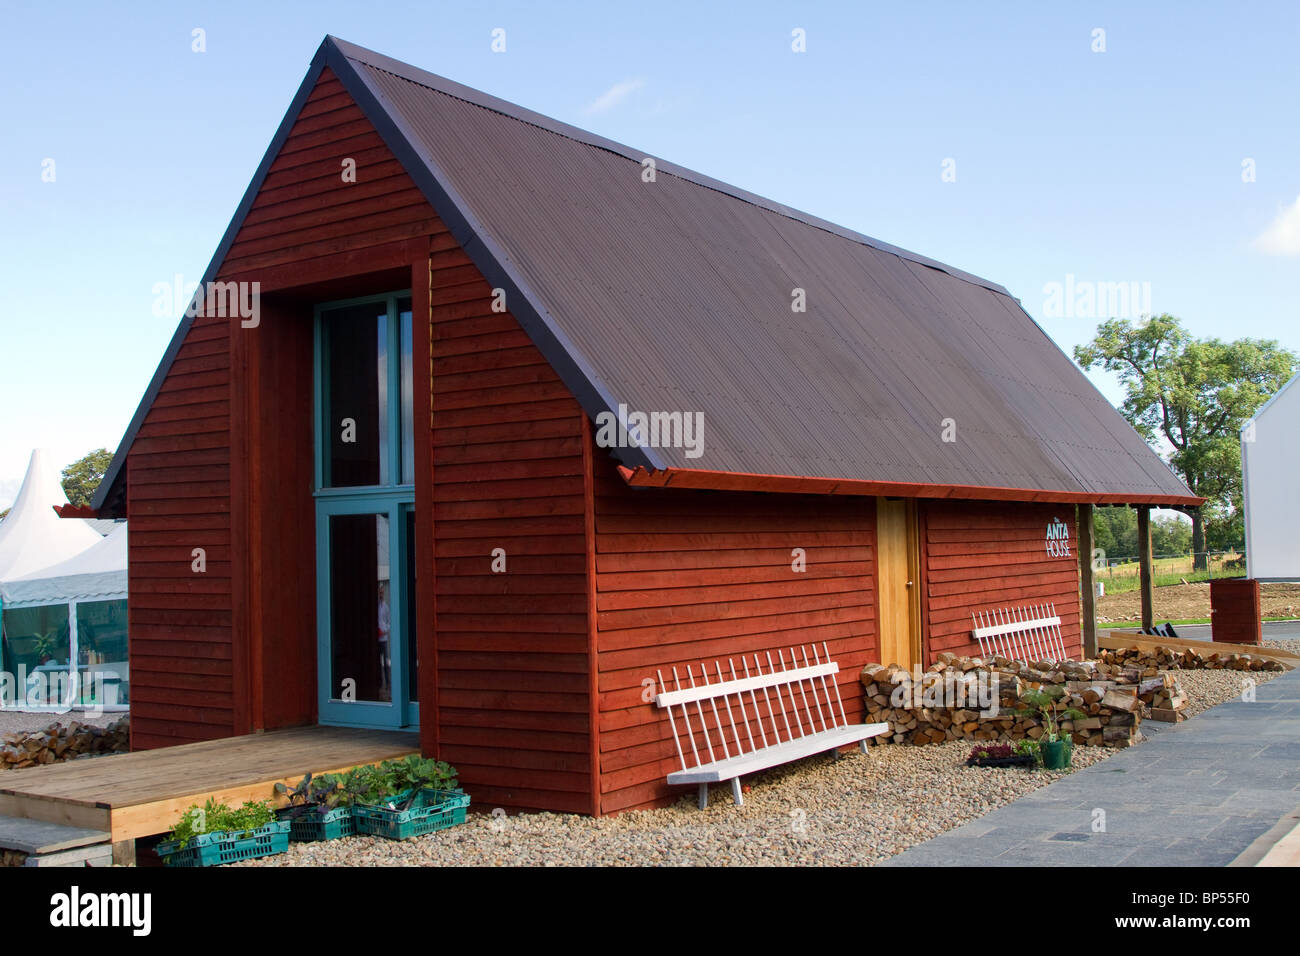 Neues, modernes Konzept Häuser. Anta, umweltfreundlich Holz- Inländische Architektur an der Schottland Gehäuse Expo, Milton von Leys, Invernesss, Schottland, Großbritannien Stockfoto